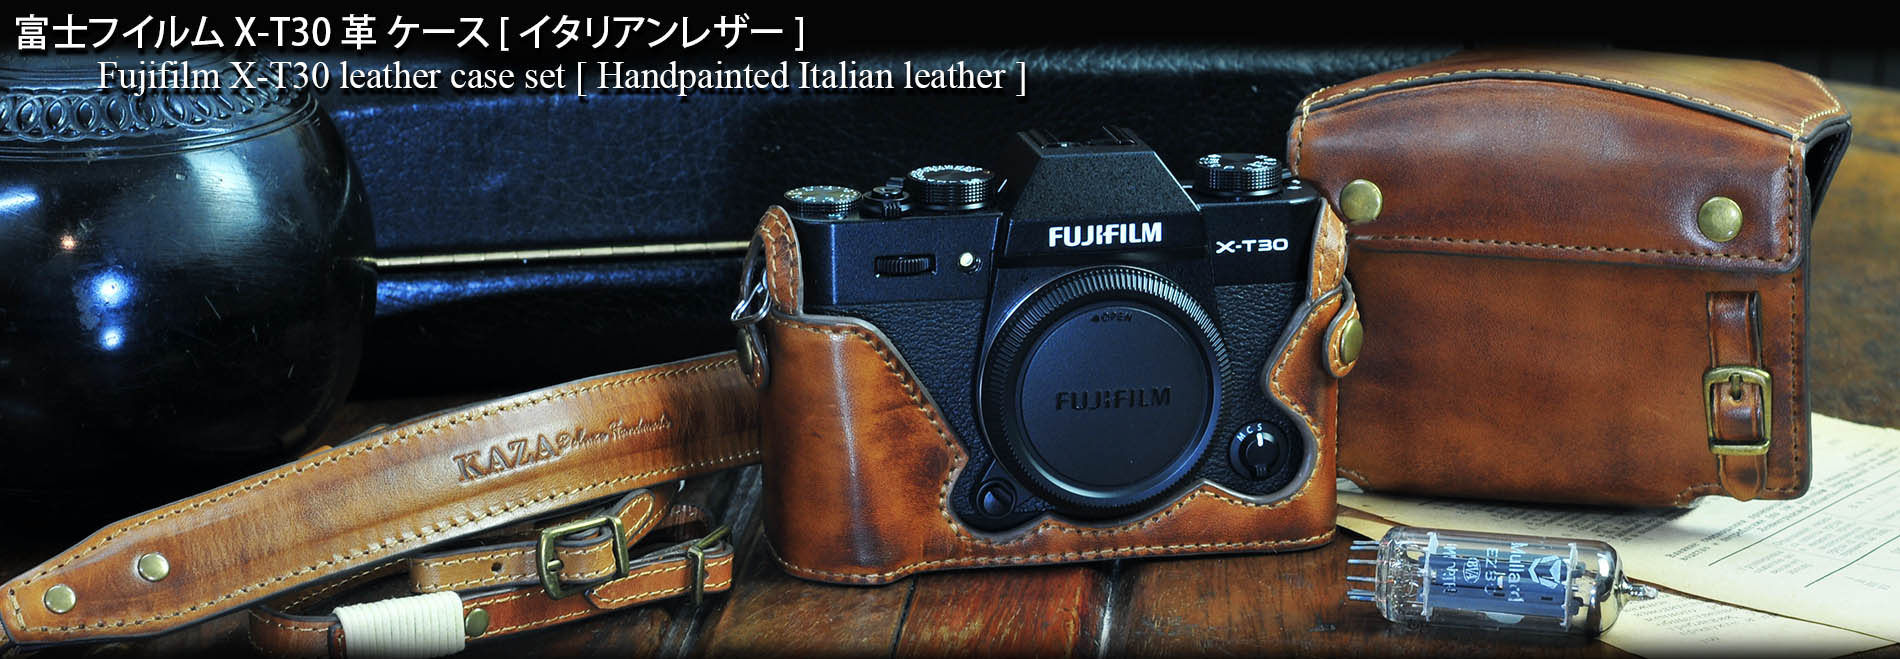 Neoprene Soft Inner Case Camera Bag for Fujifilm X-T30 XT30 II with 15-45mm  lens | eBay